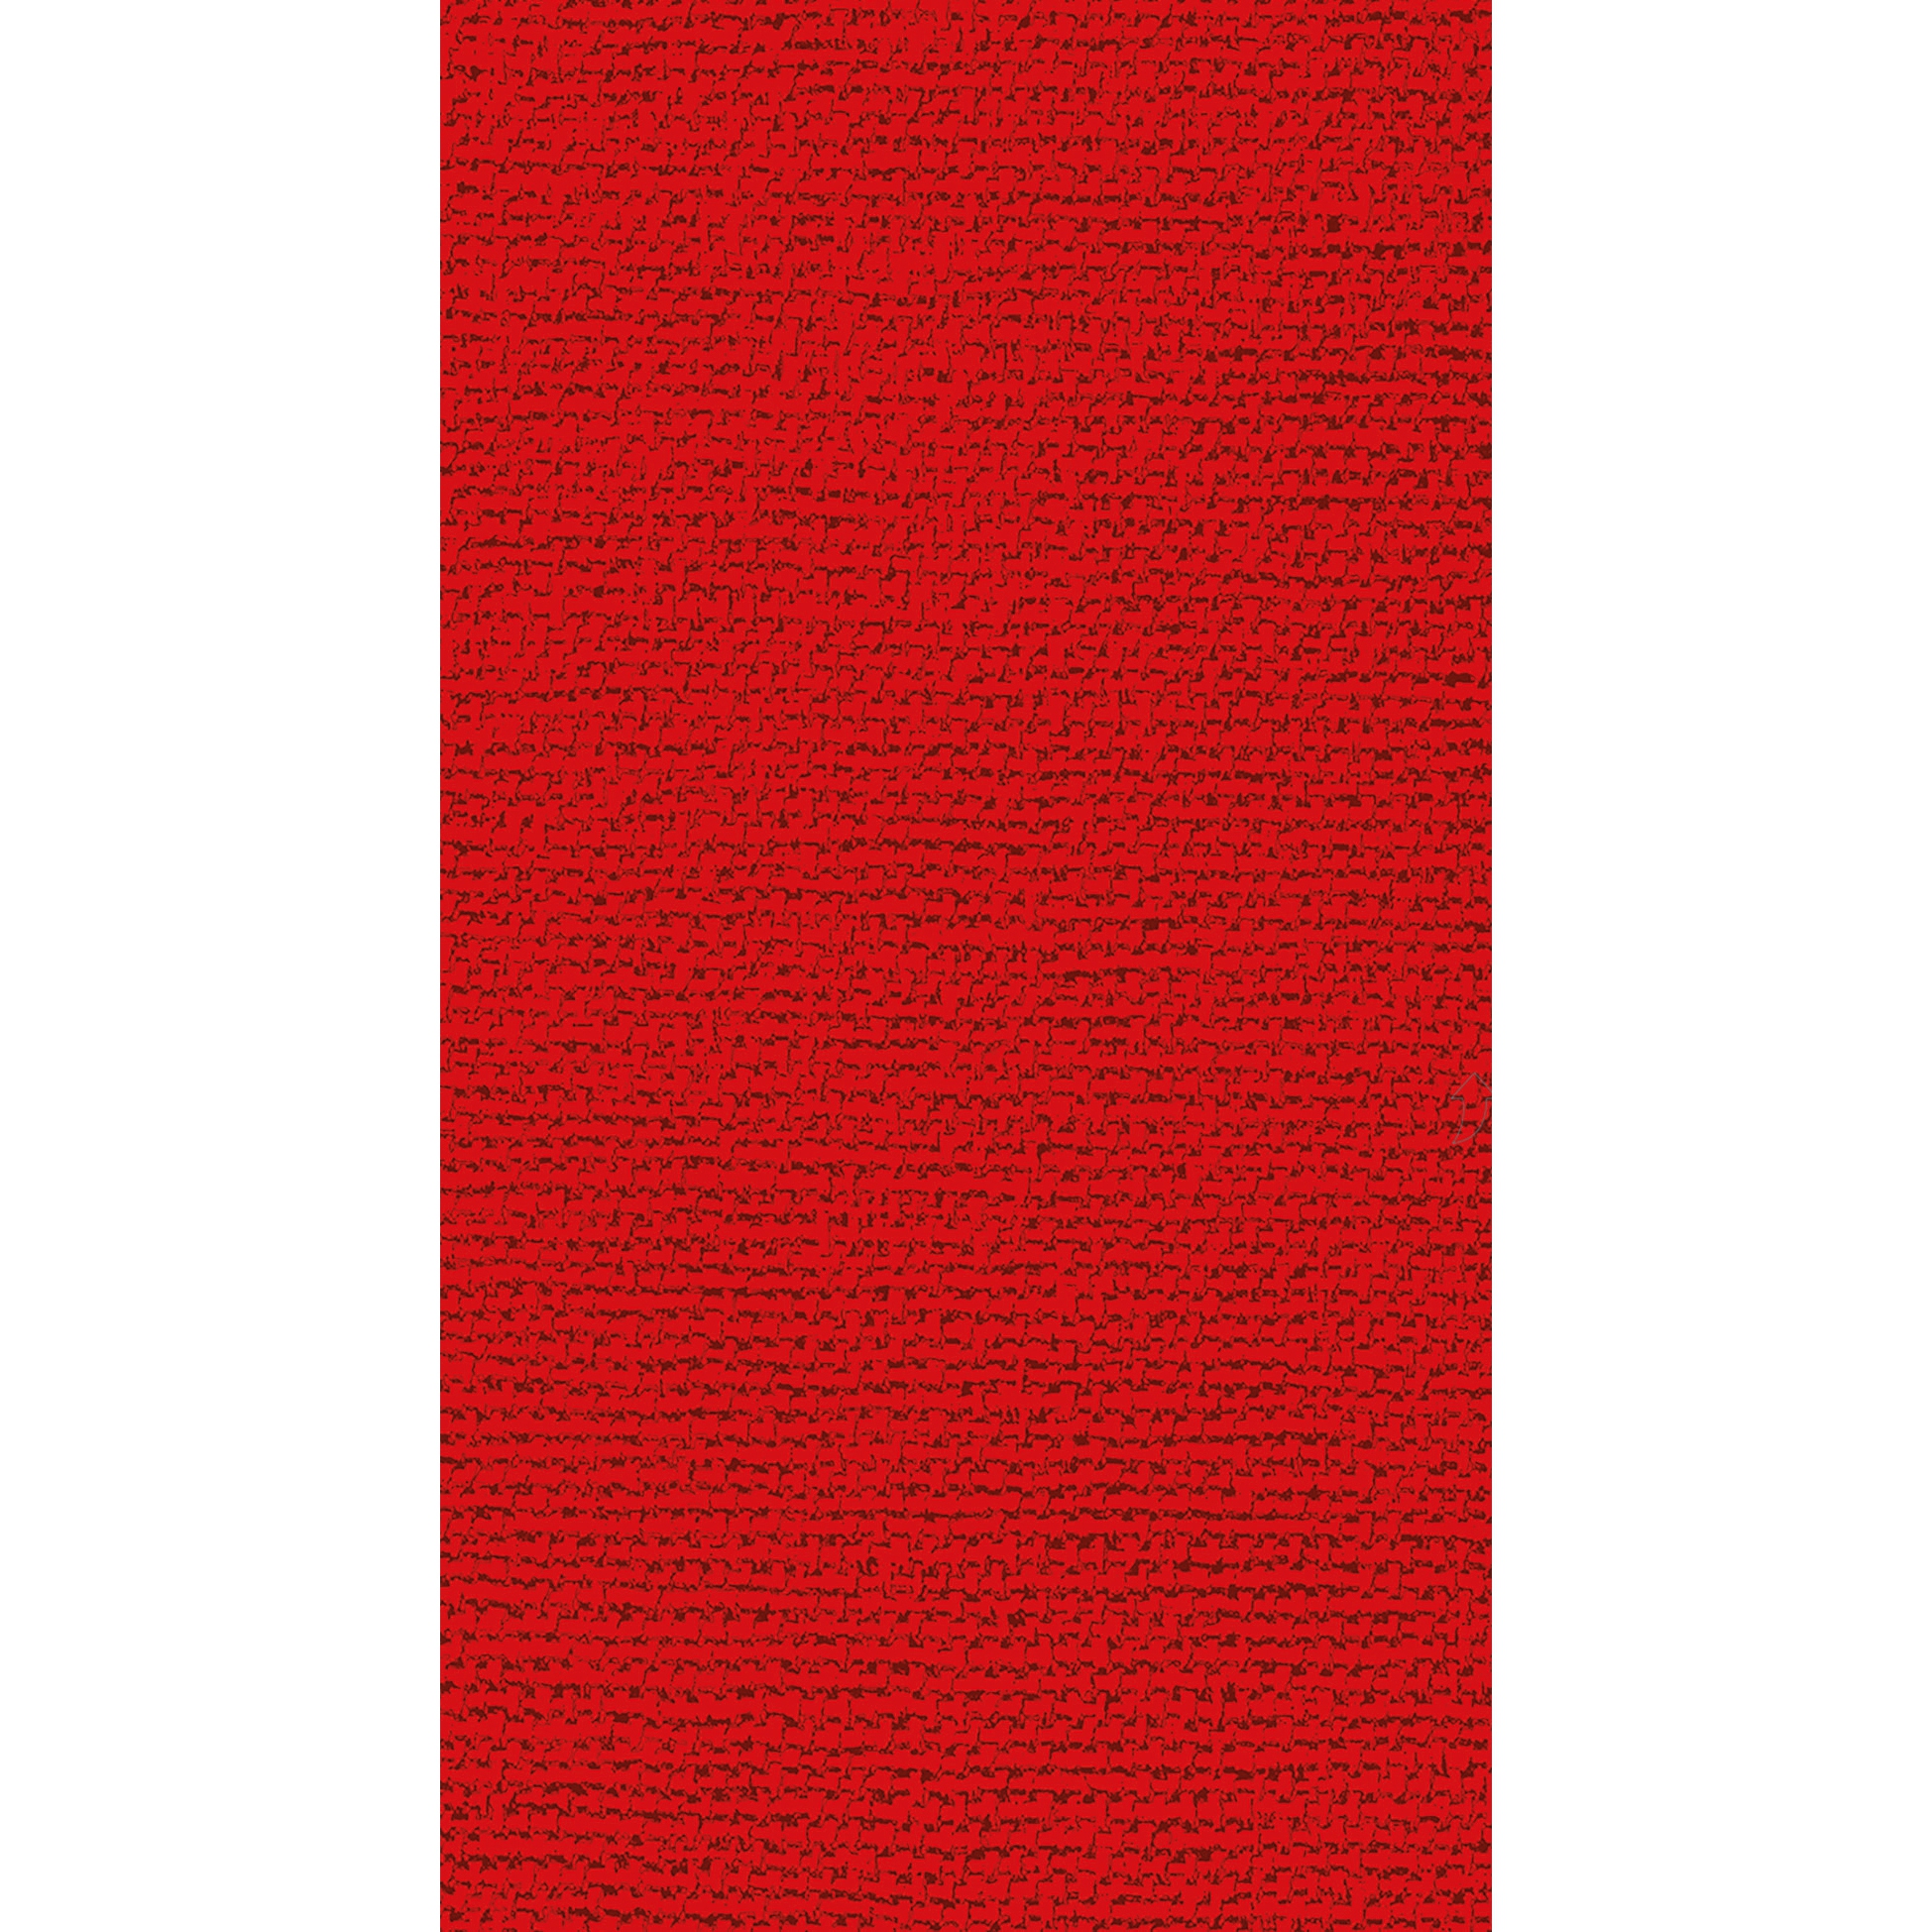 Toalla para invitados - Canvas red GuestTowels 33x40